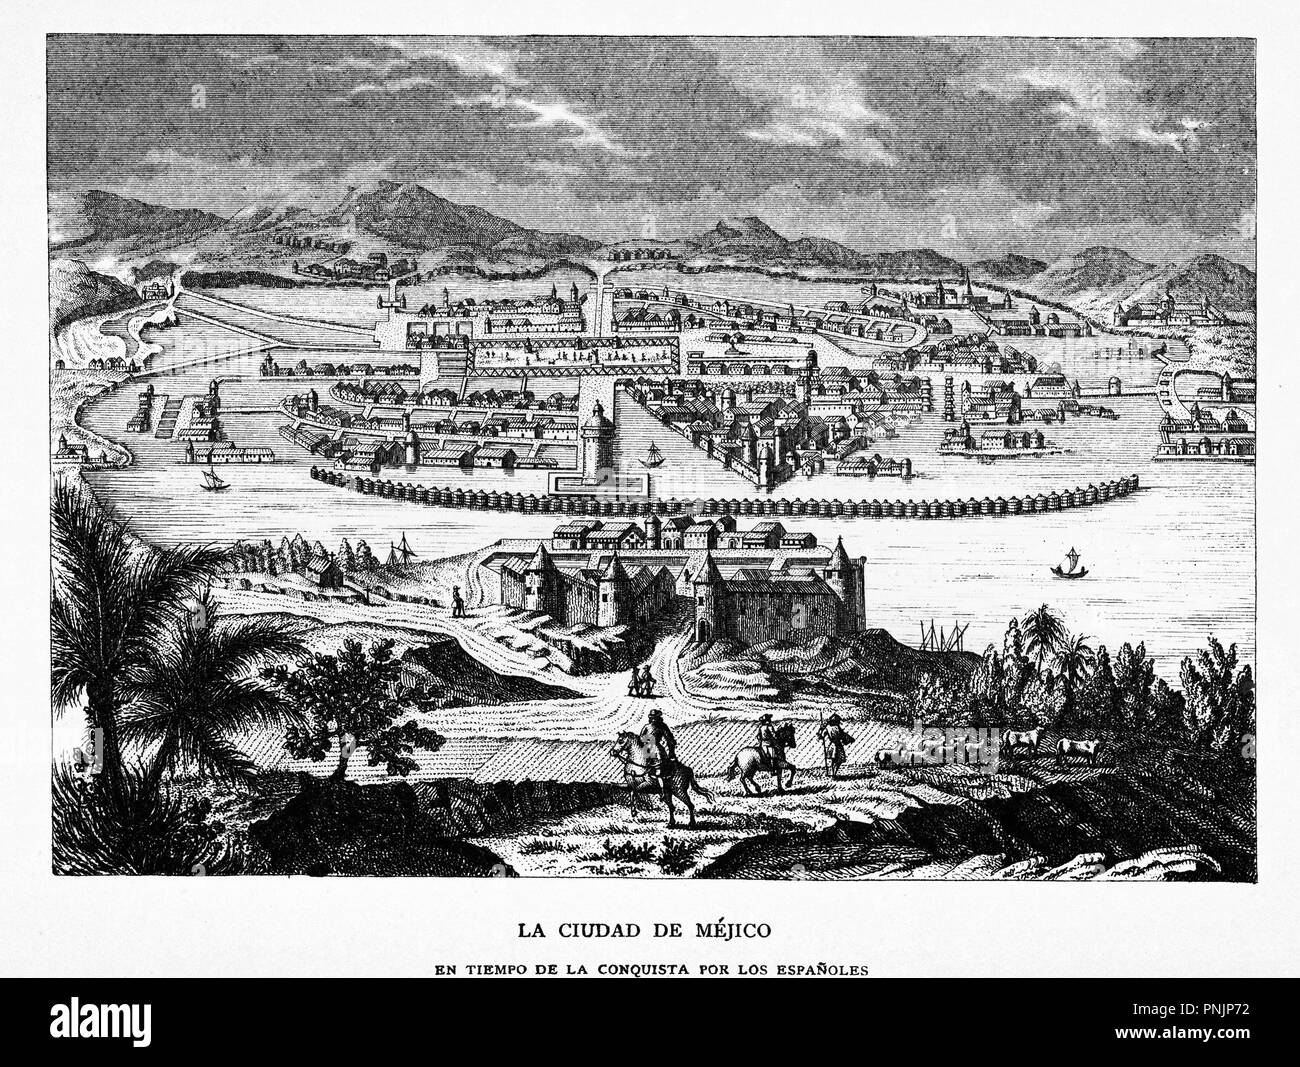 Vista de la ciudad de Méjico en tiempos de la conquista de los españoles. Grabado de 1870. Stock Photo